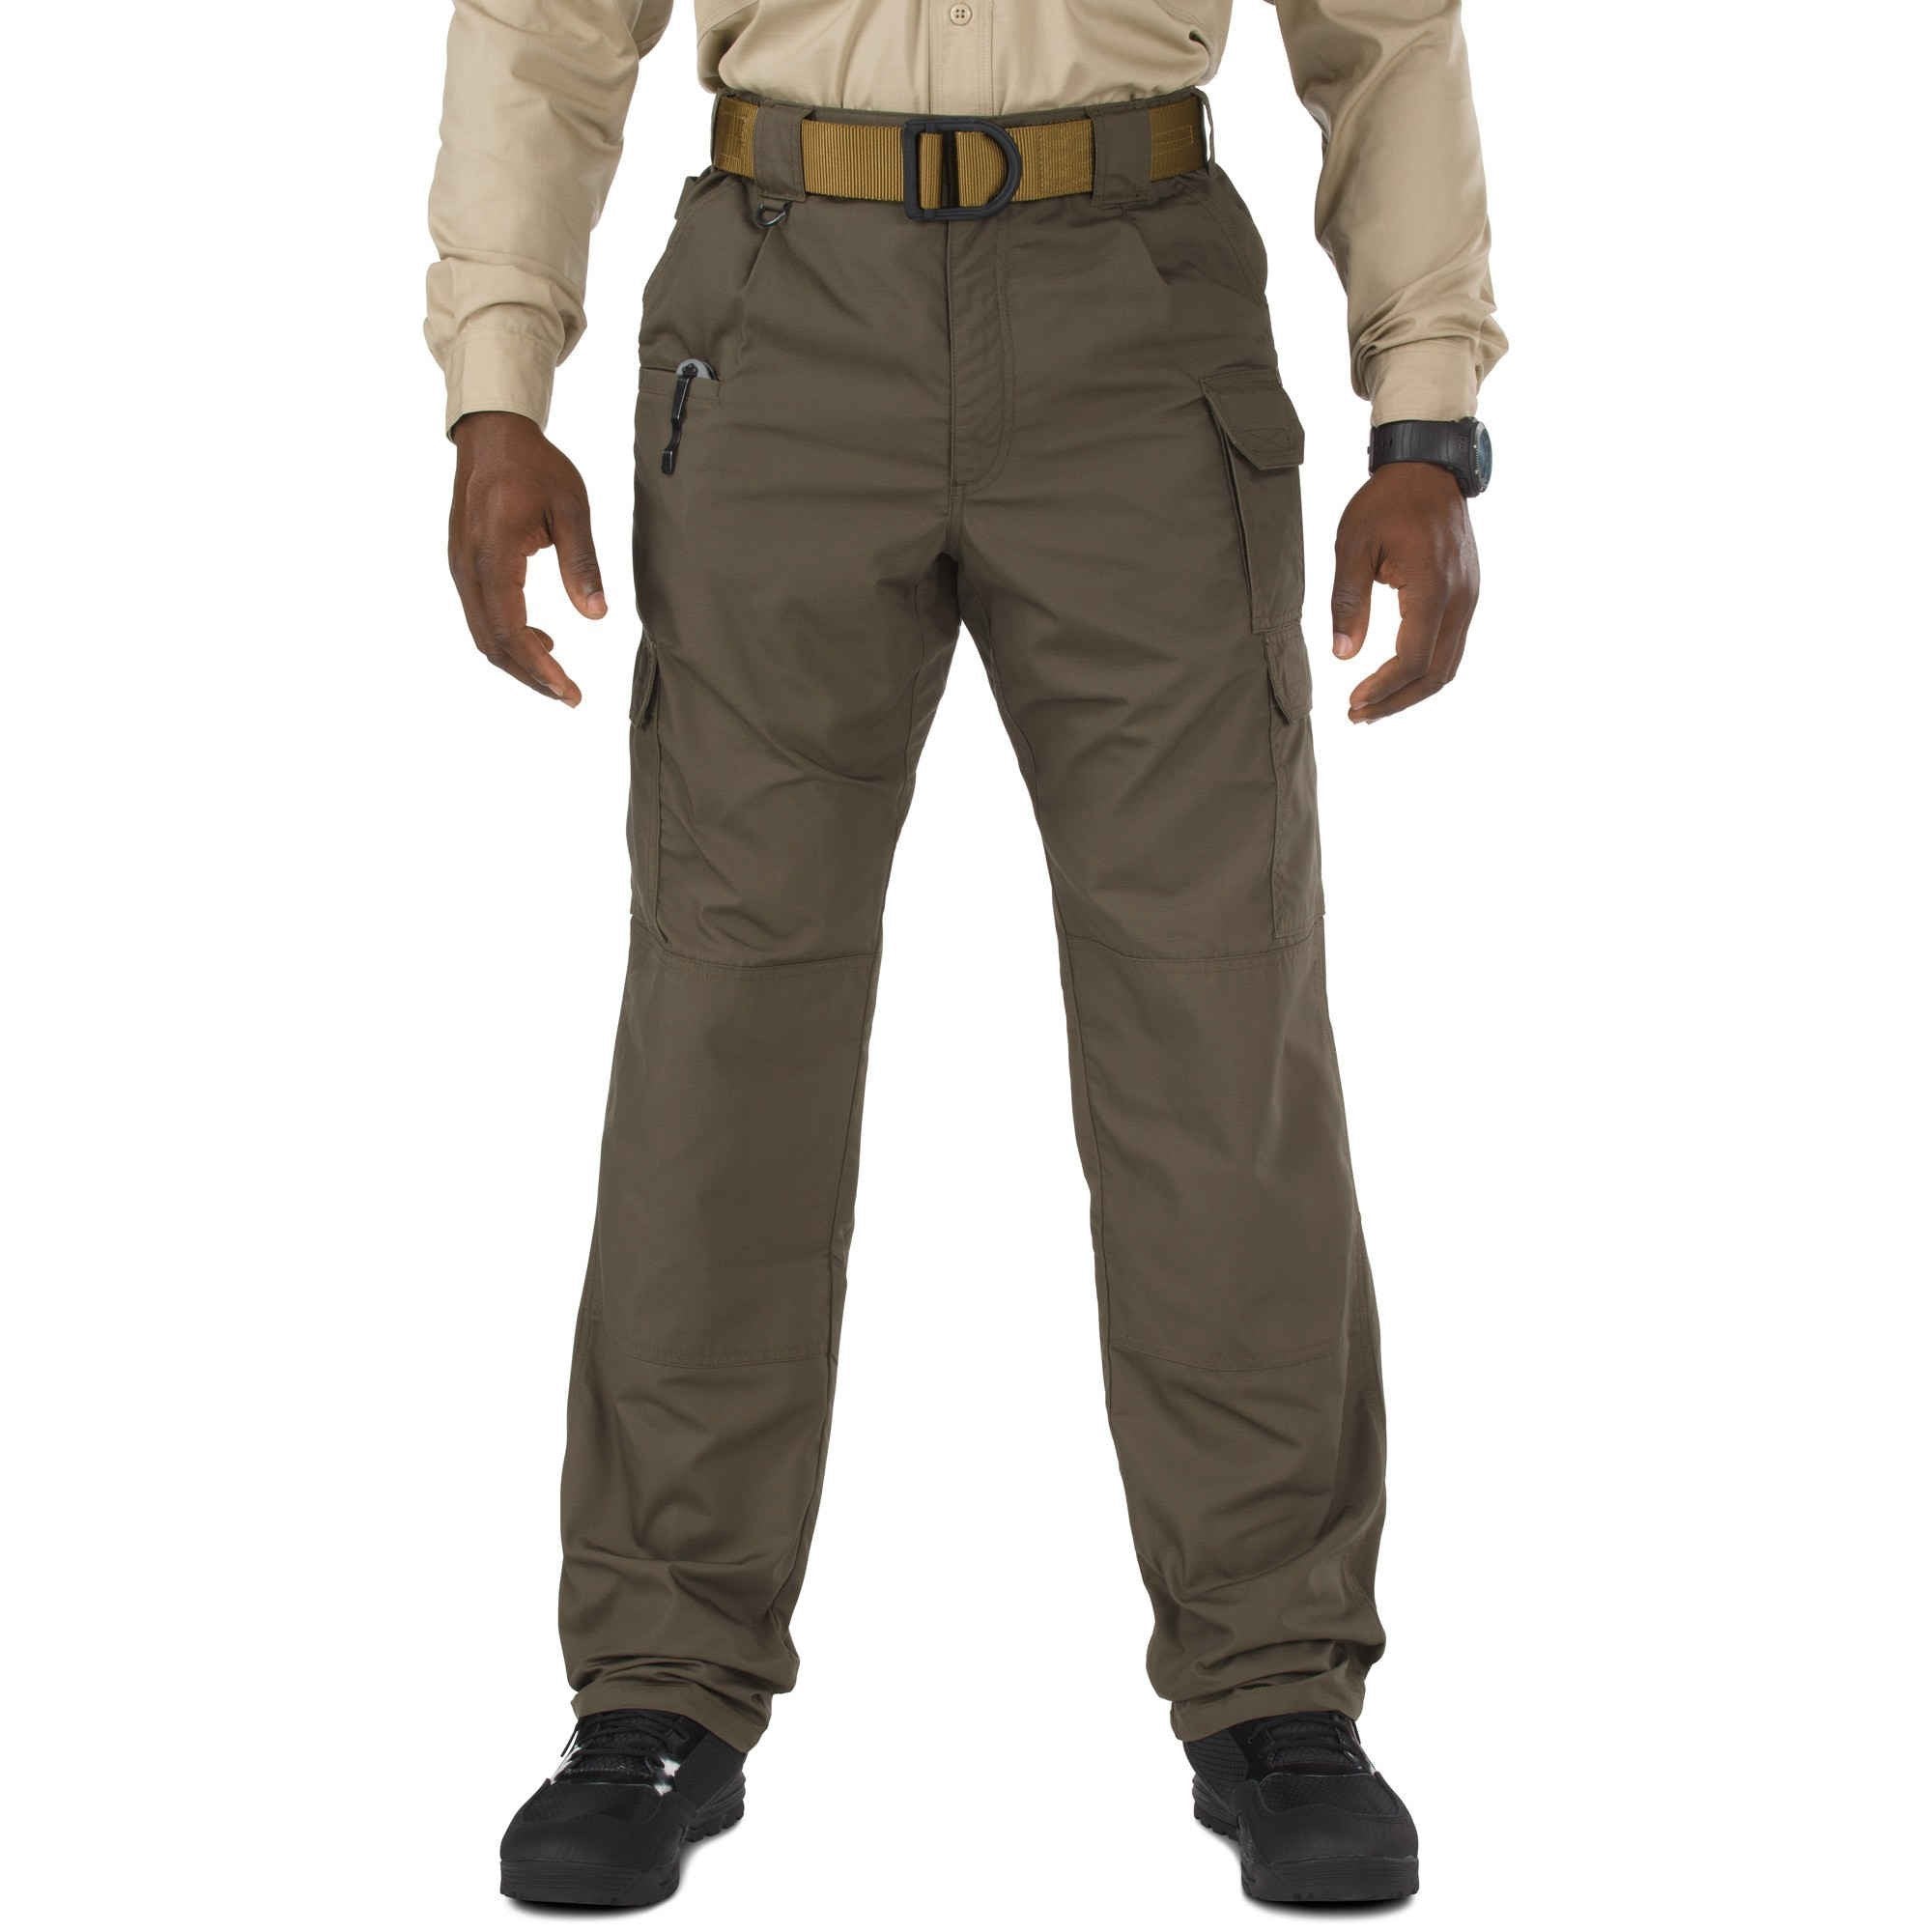 5.11 Tactical Taclite Pro Pants - Tundra Pants 5.11 Tactical Tactical Gear Supplier Tactical Distributors Australia